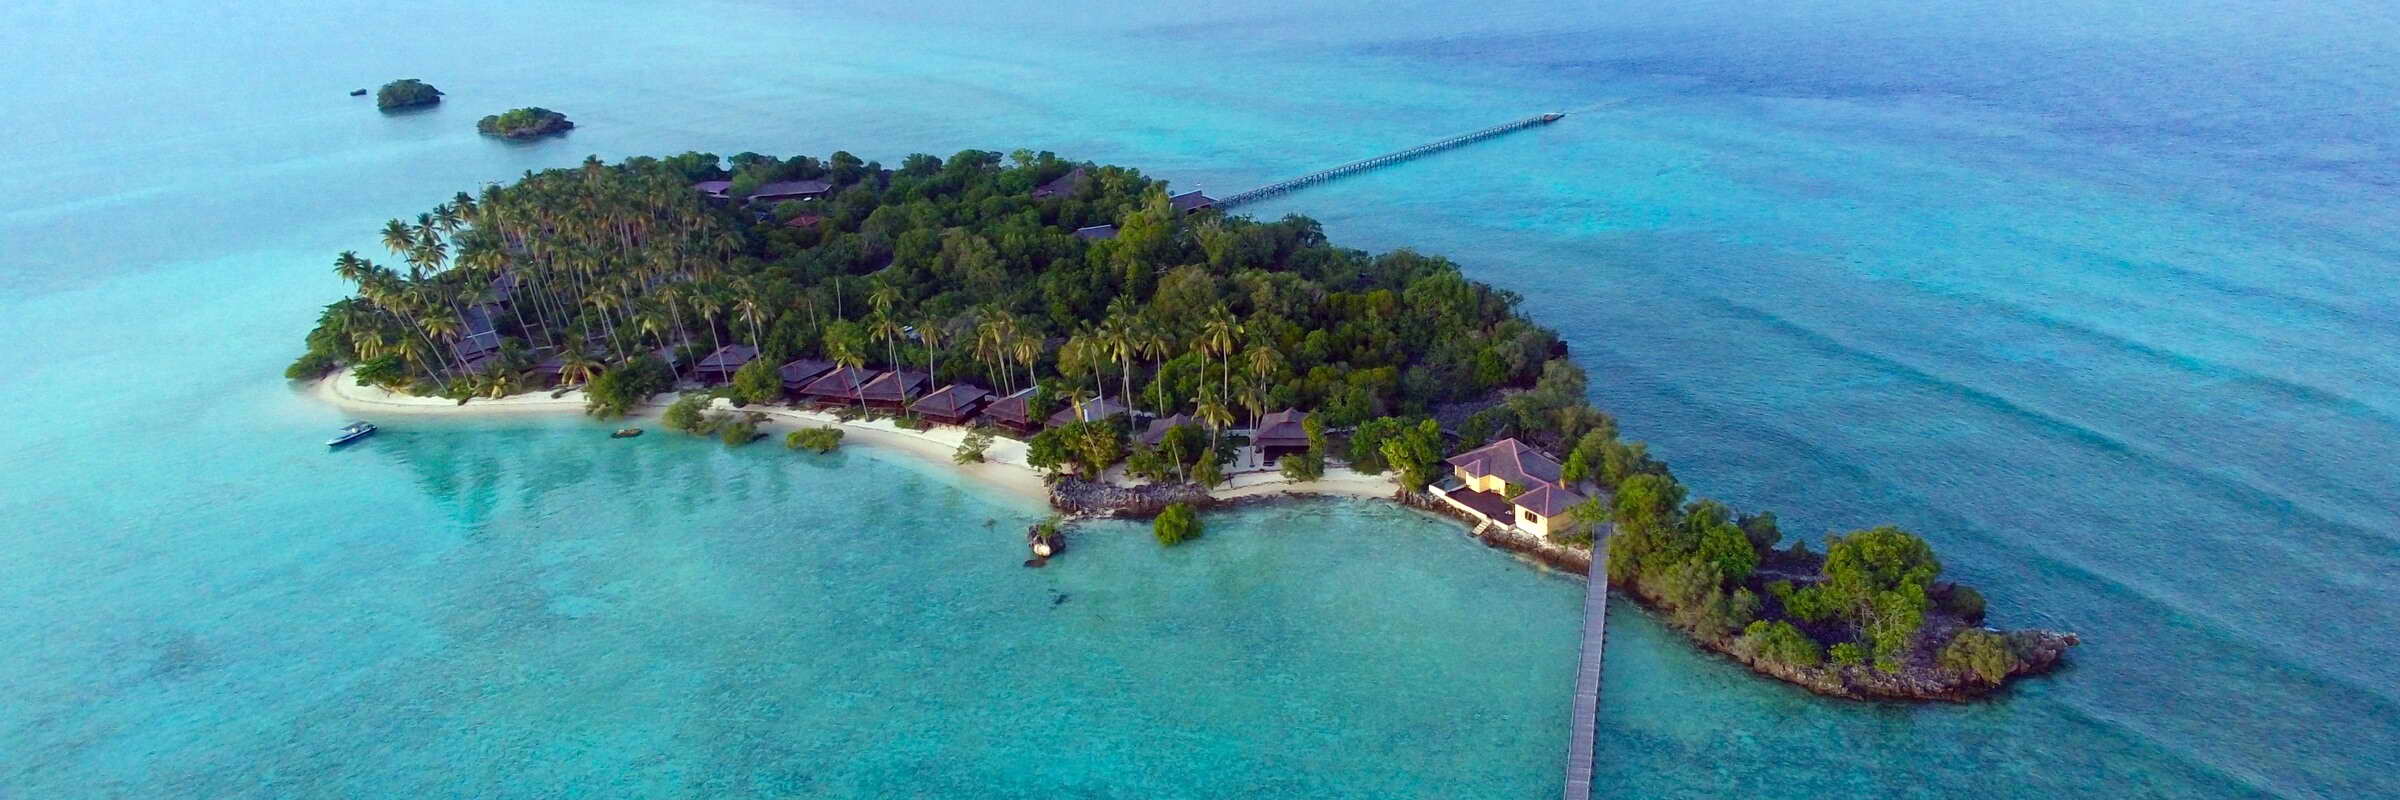 Das paradiesische Nunukan Island Resort befindet sich inmitten der Sulawesisee vor der Ostküste Borneos.